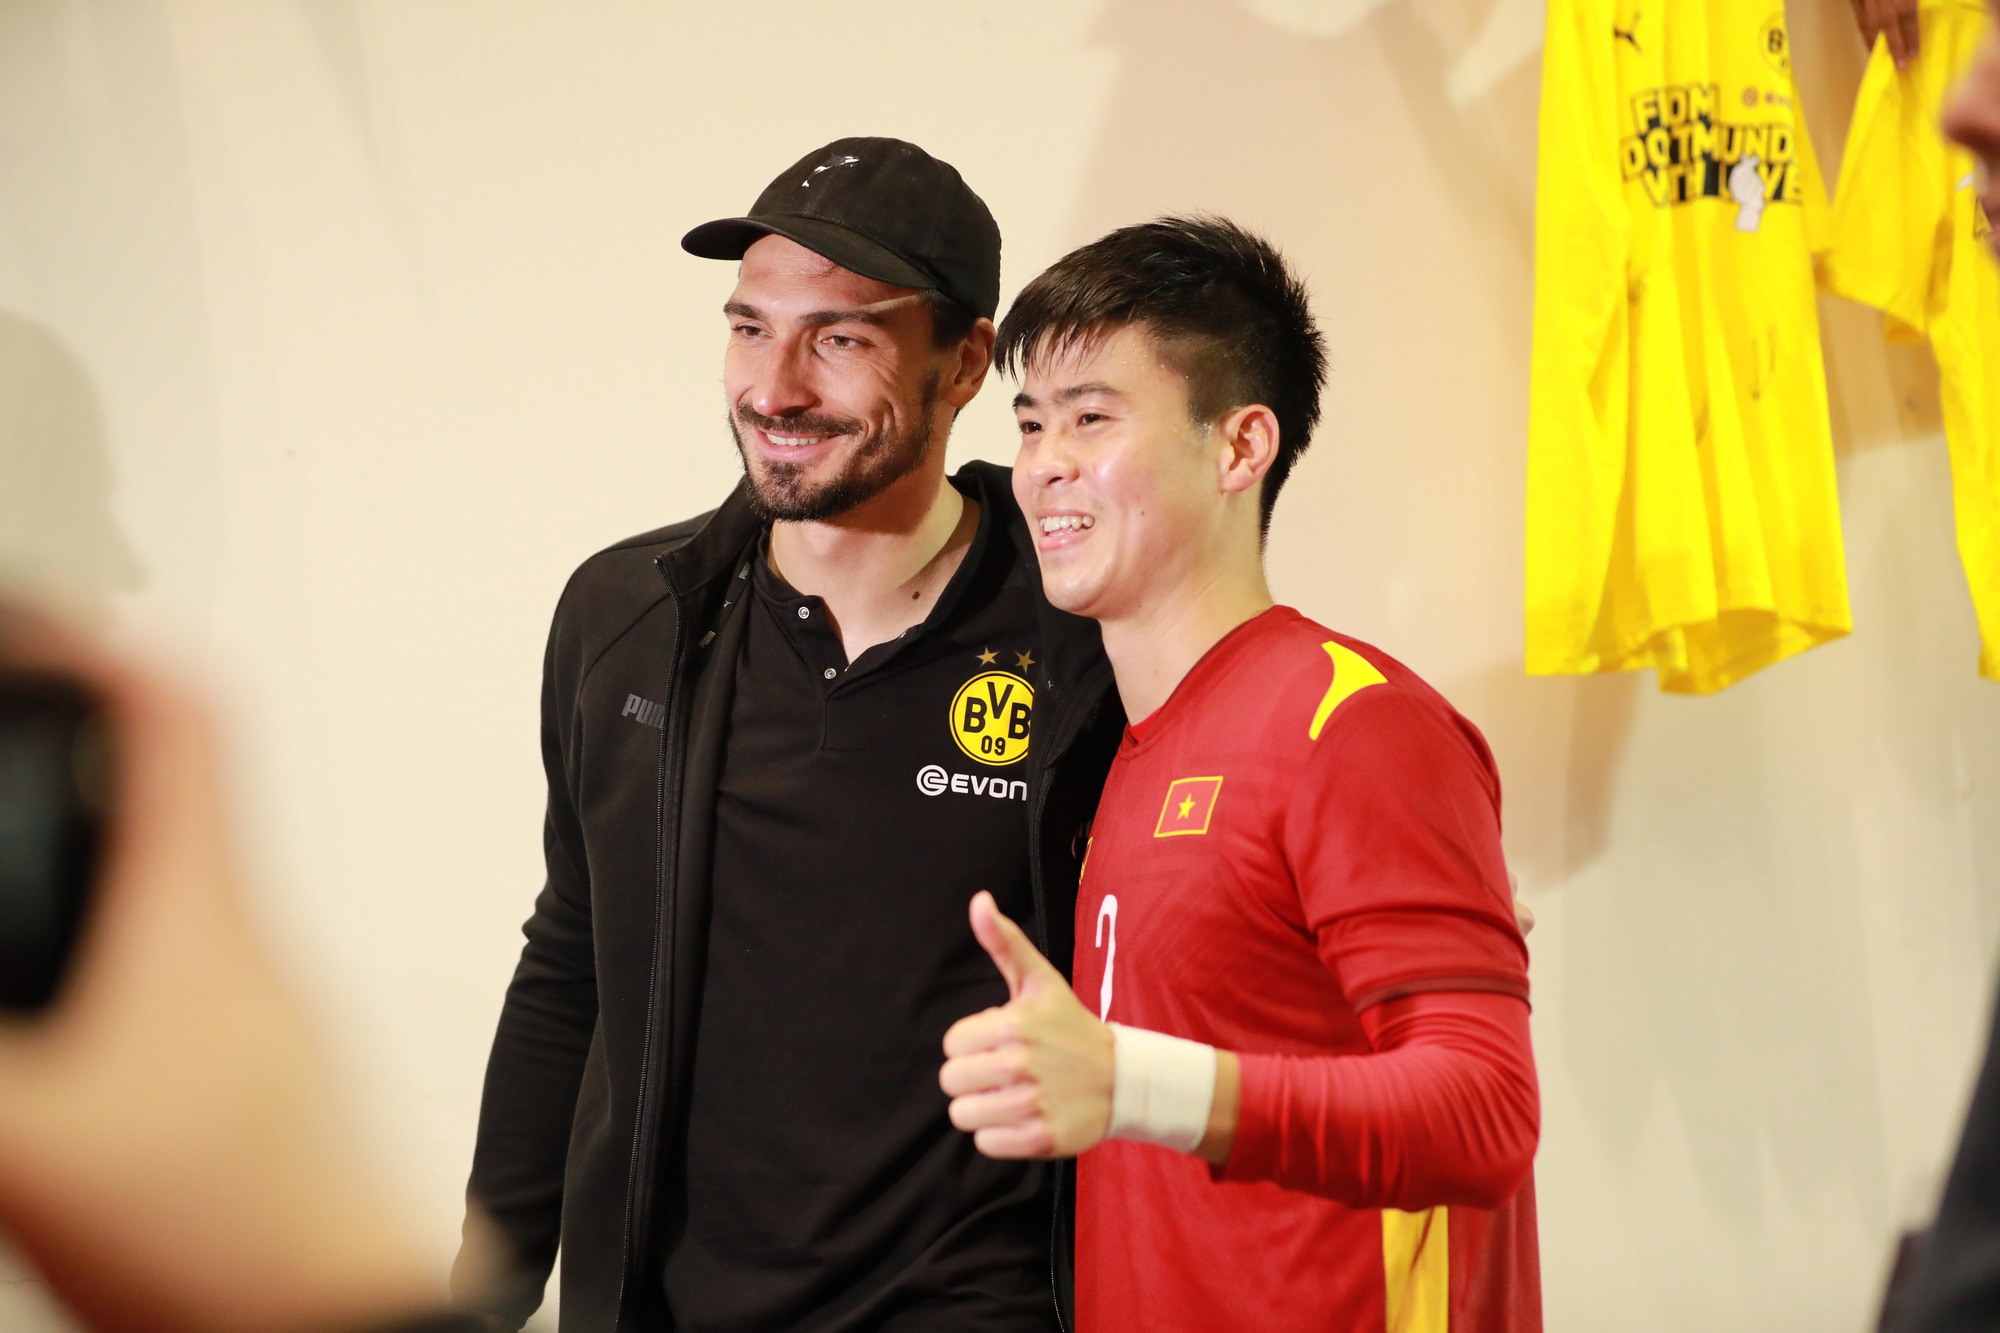 Văn Hậu 'đu idol' thành công sau trận giao hữu với Dortmund - Ảnh 4.